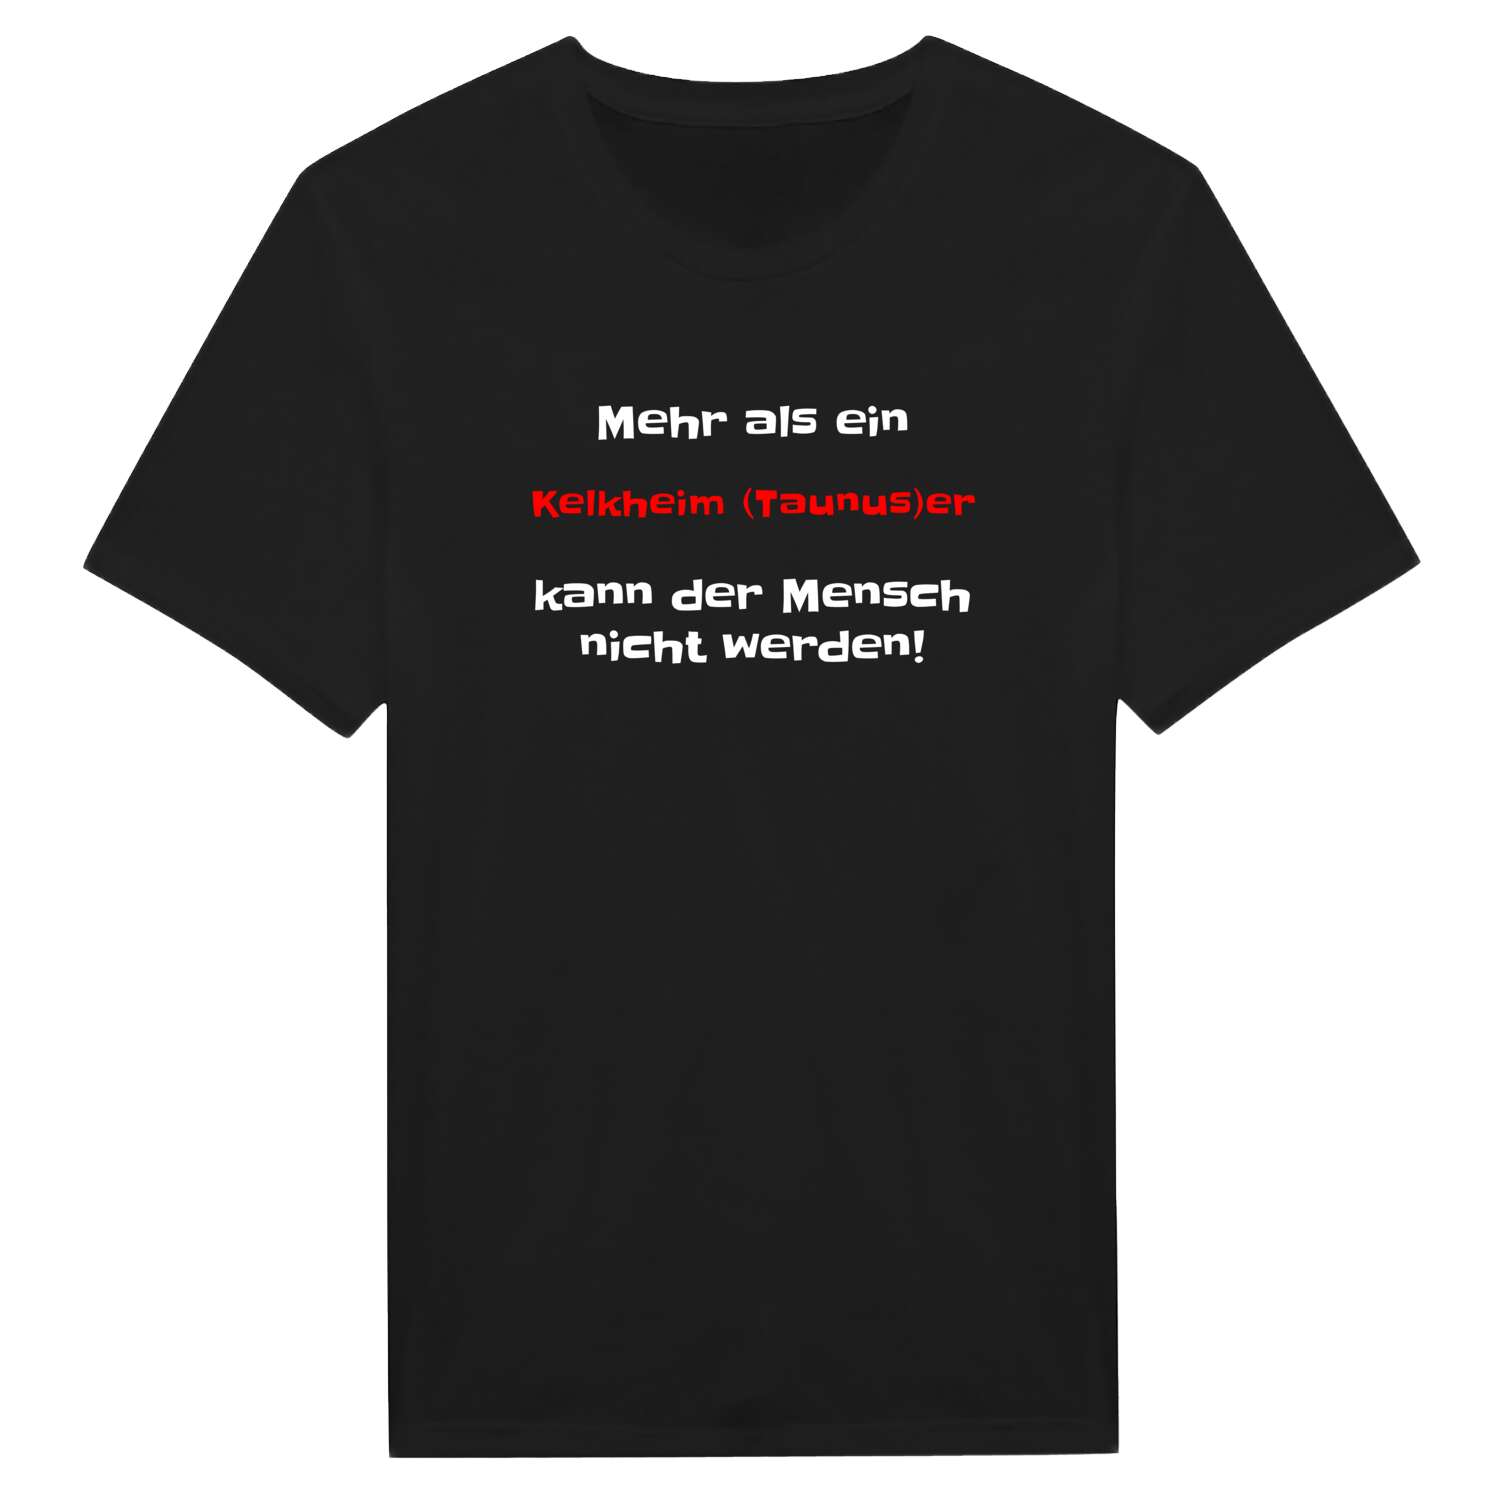 Kelkheim (Taunus) T-Shirt »Mehr als ein«